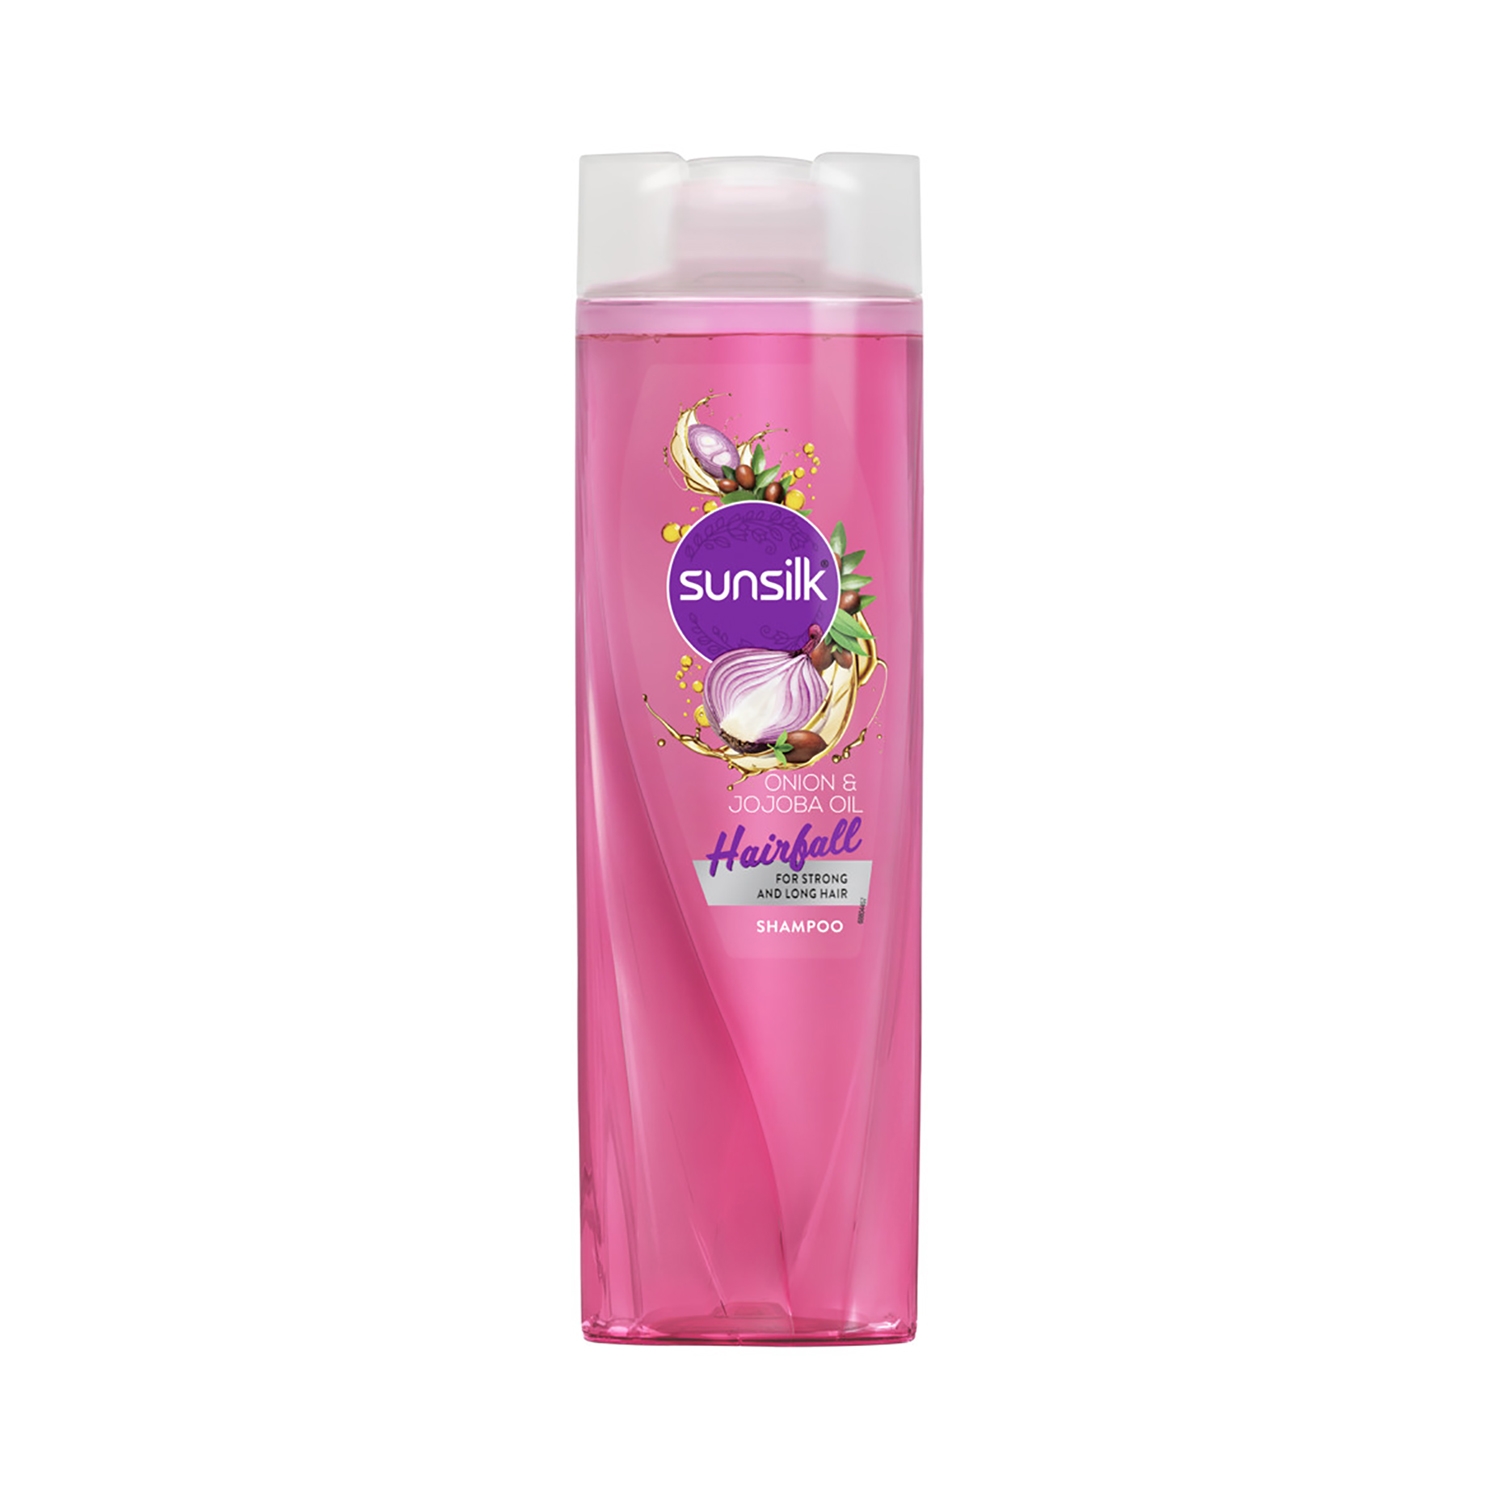 Sunsilk | Sunsilk Hairfall Shampoo With Onion & Jojoba Oil (370ml)